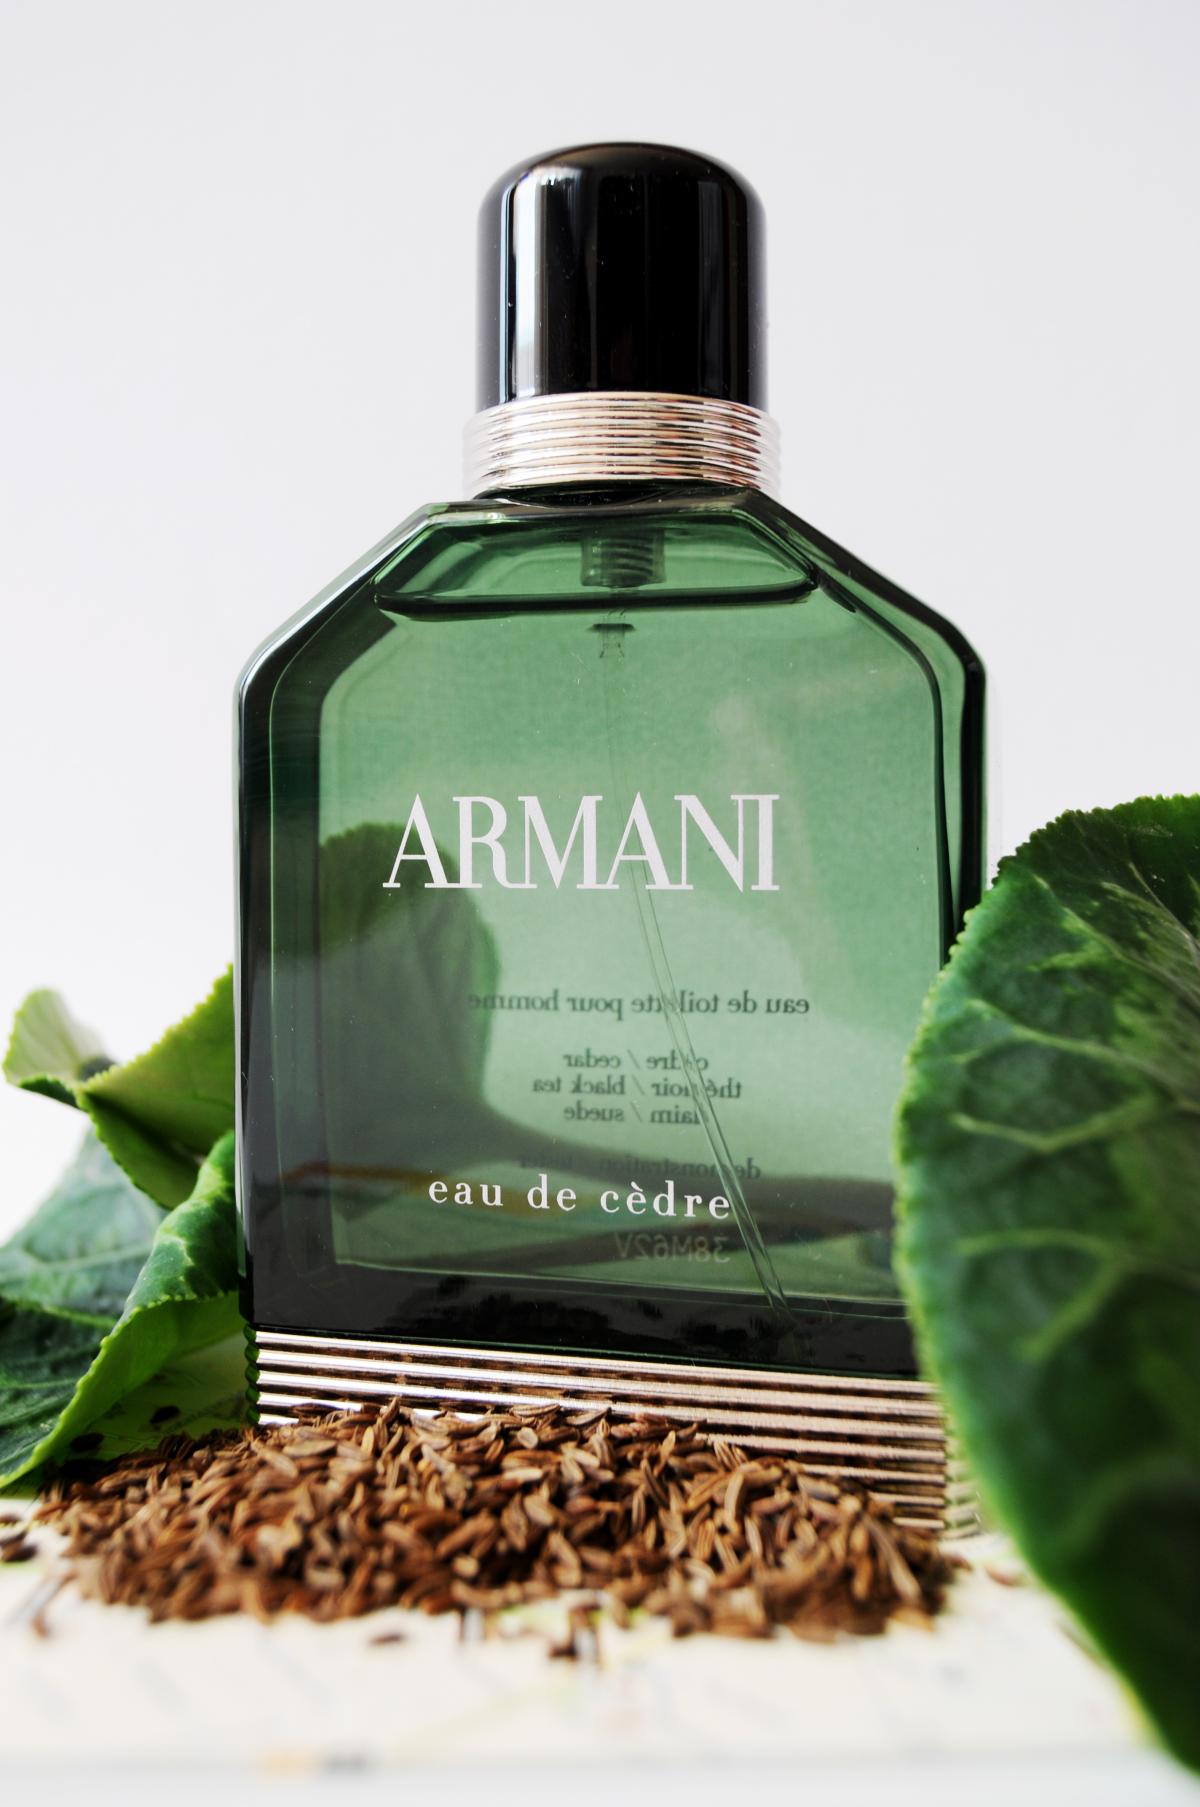 Armani Eau de Cèdre Giorgio Armani cologne - a fragrance for men 2015